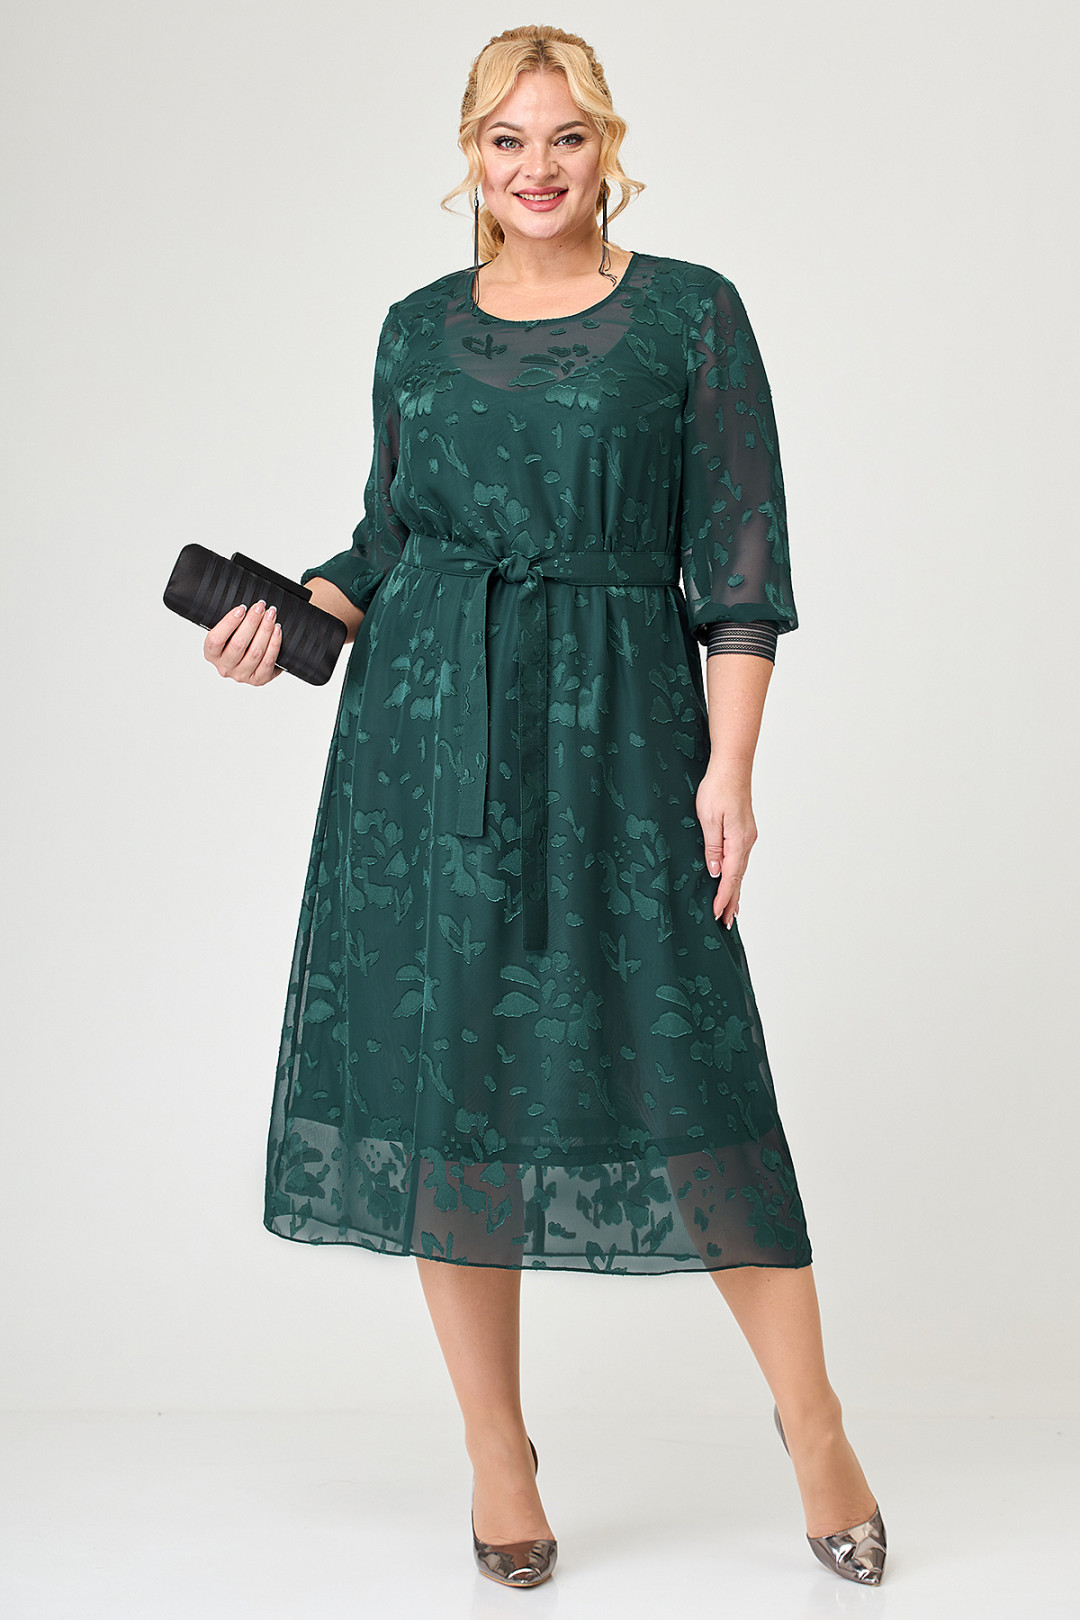 Платье ALGRANDA (Новелла Шарм) A3836-4